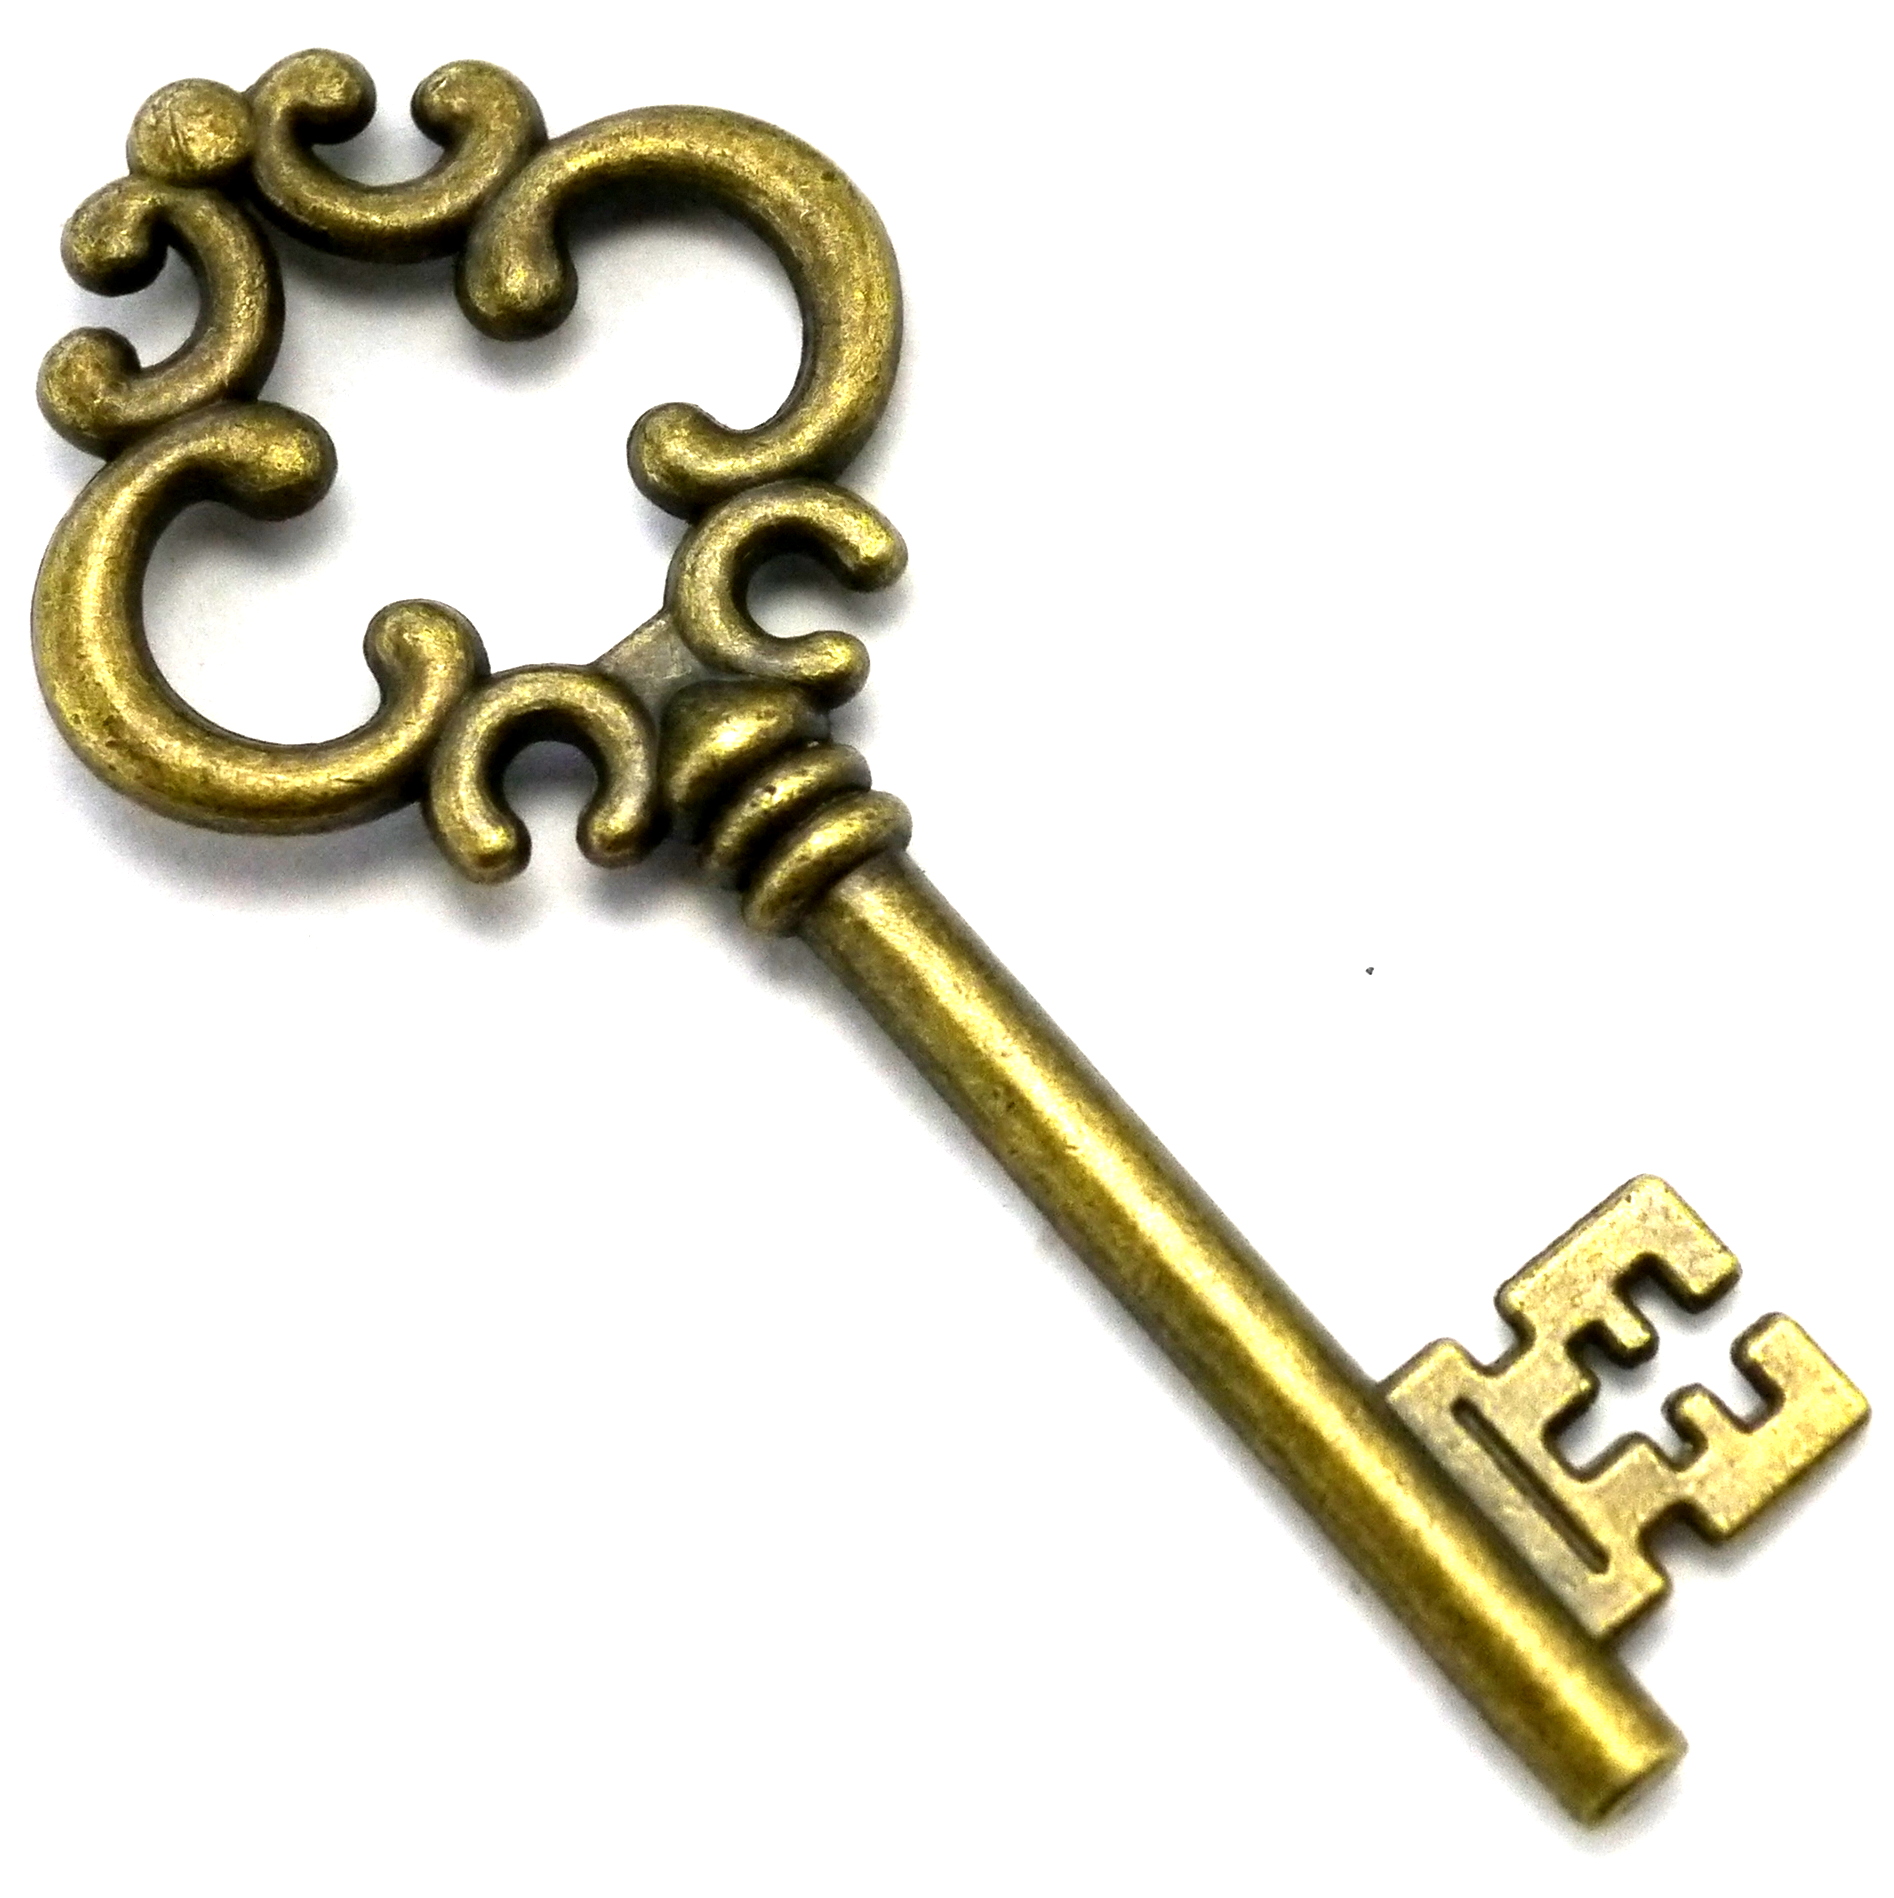 Antique Key Clipart 